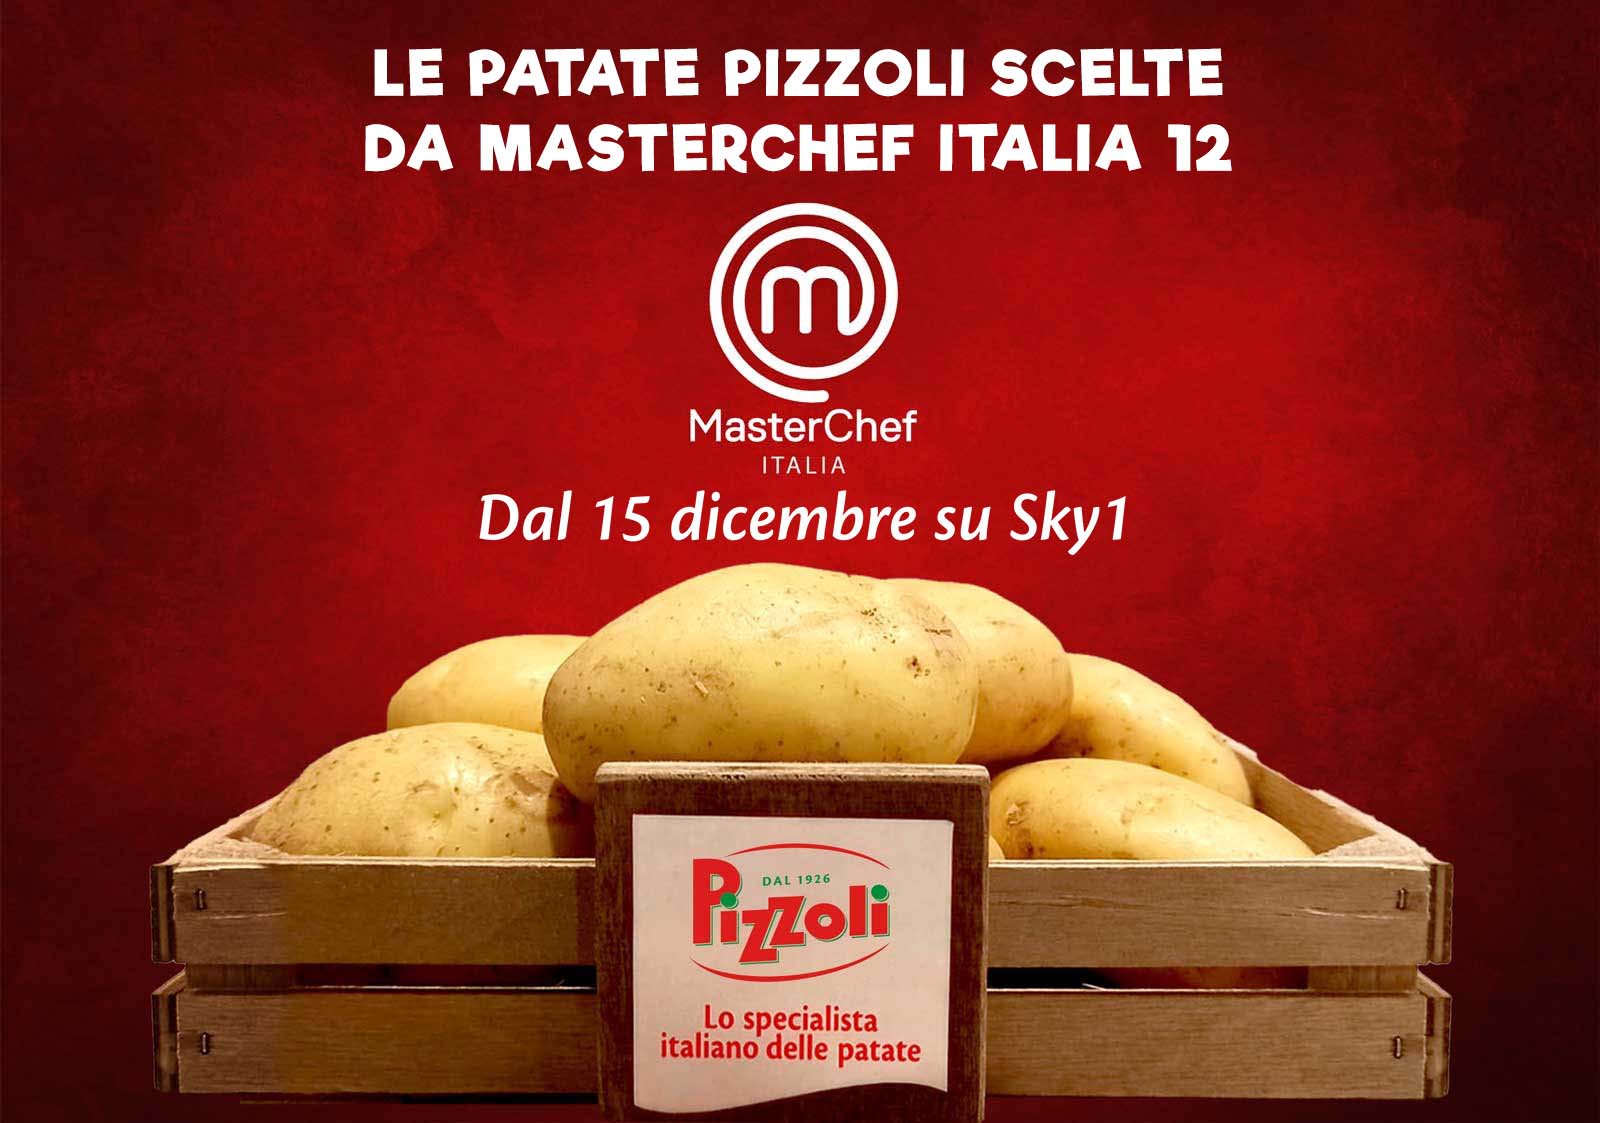 Le patate di Pizzoli a MasterChef Italia